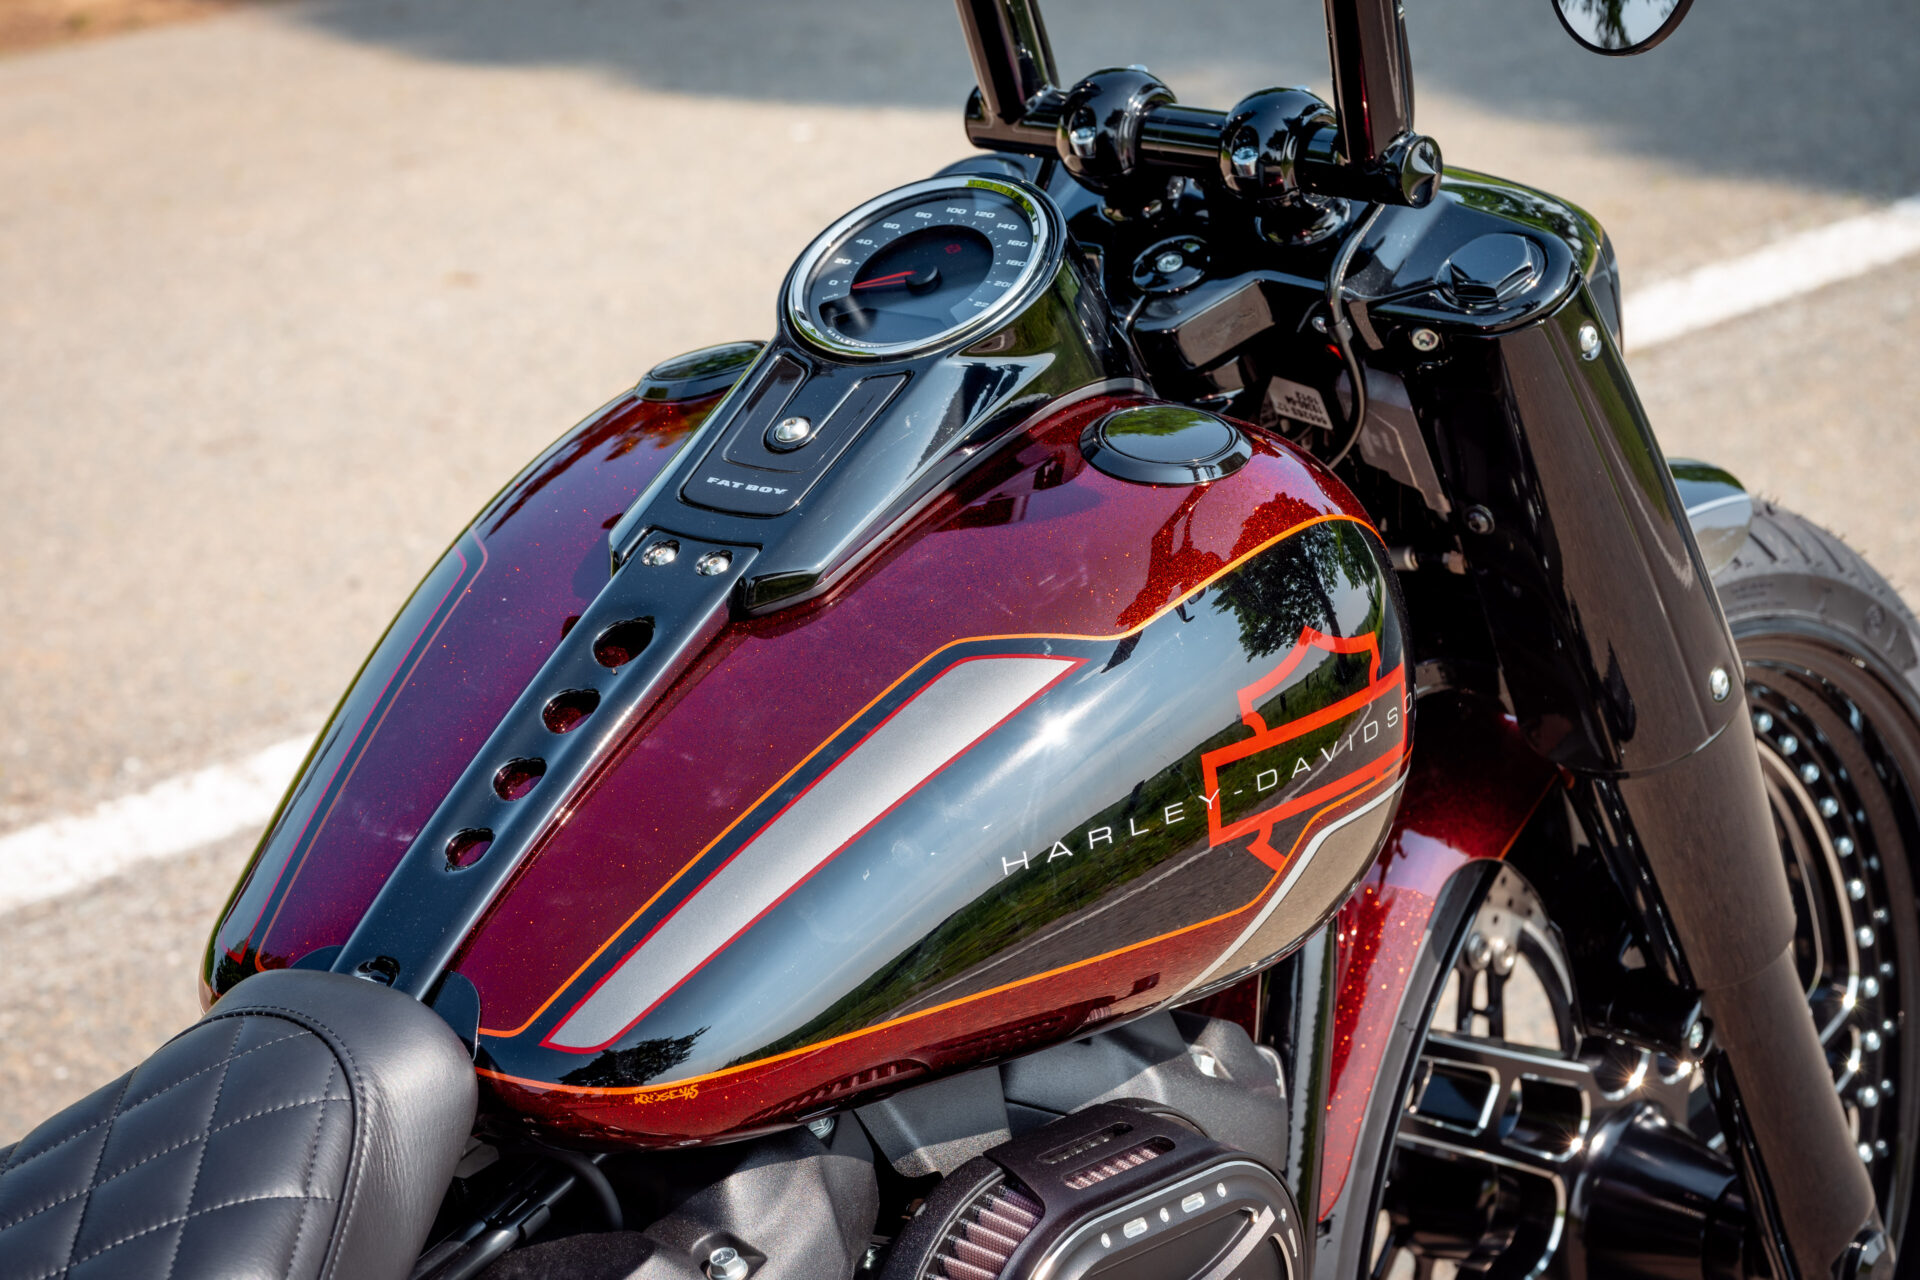 Viking Duo-tone Medium Green/Black Harley Davidson Motorcycle